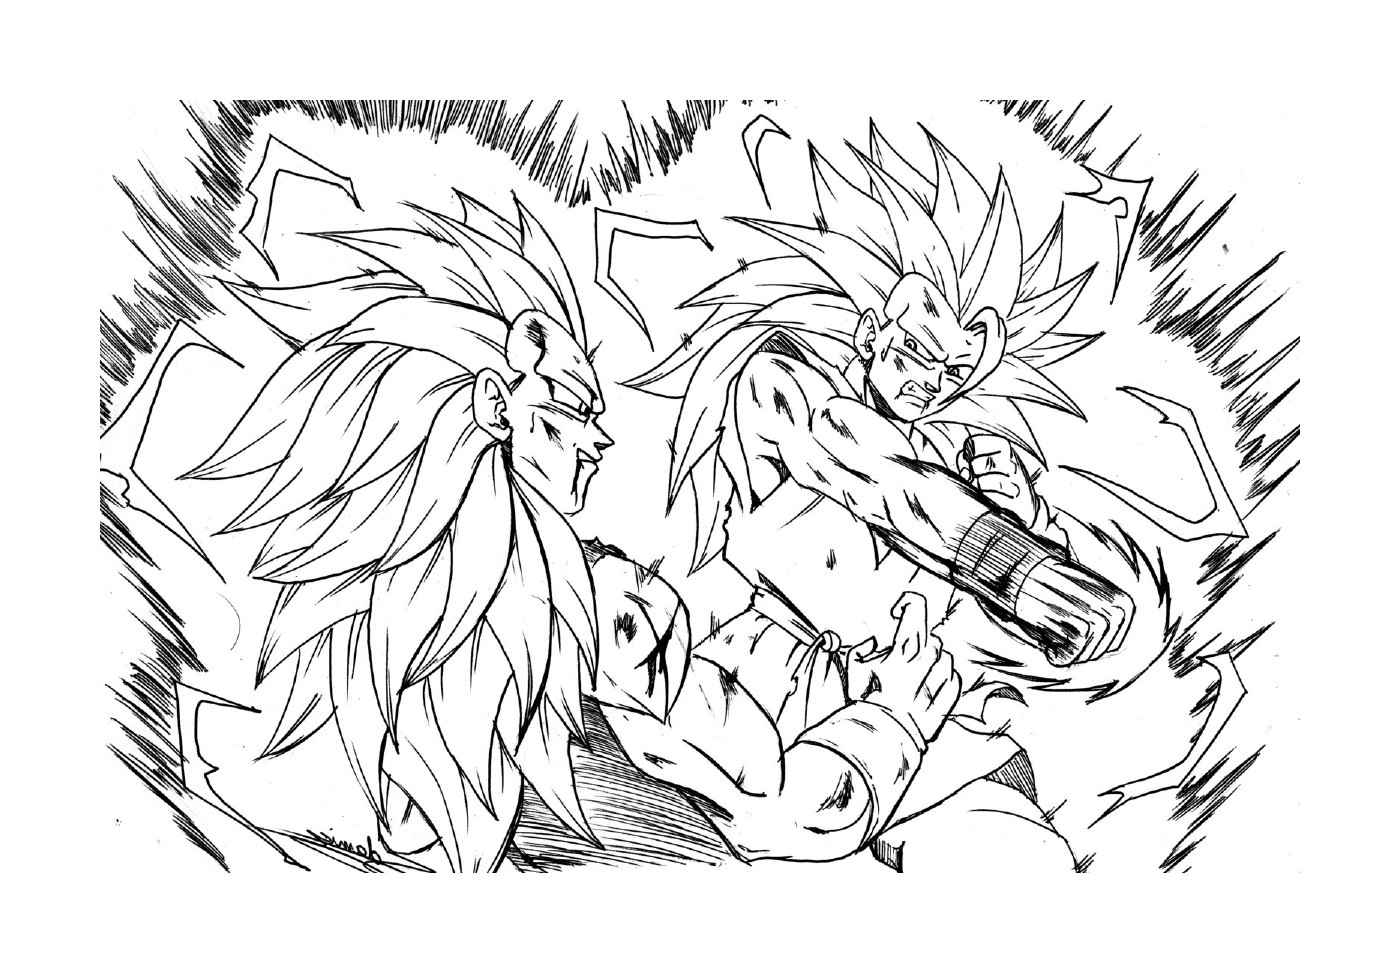   Goku et Broly, combat légendaire 